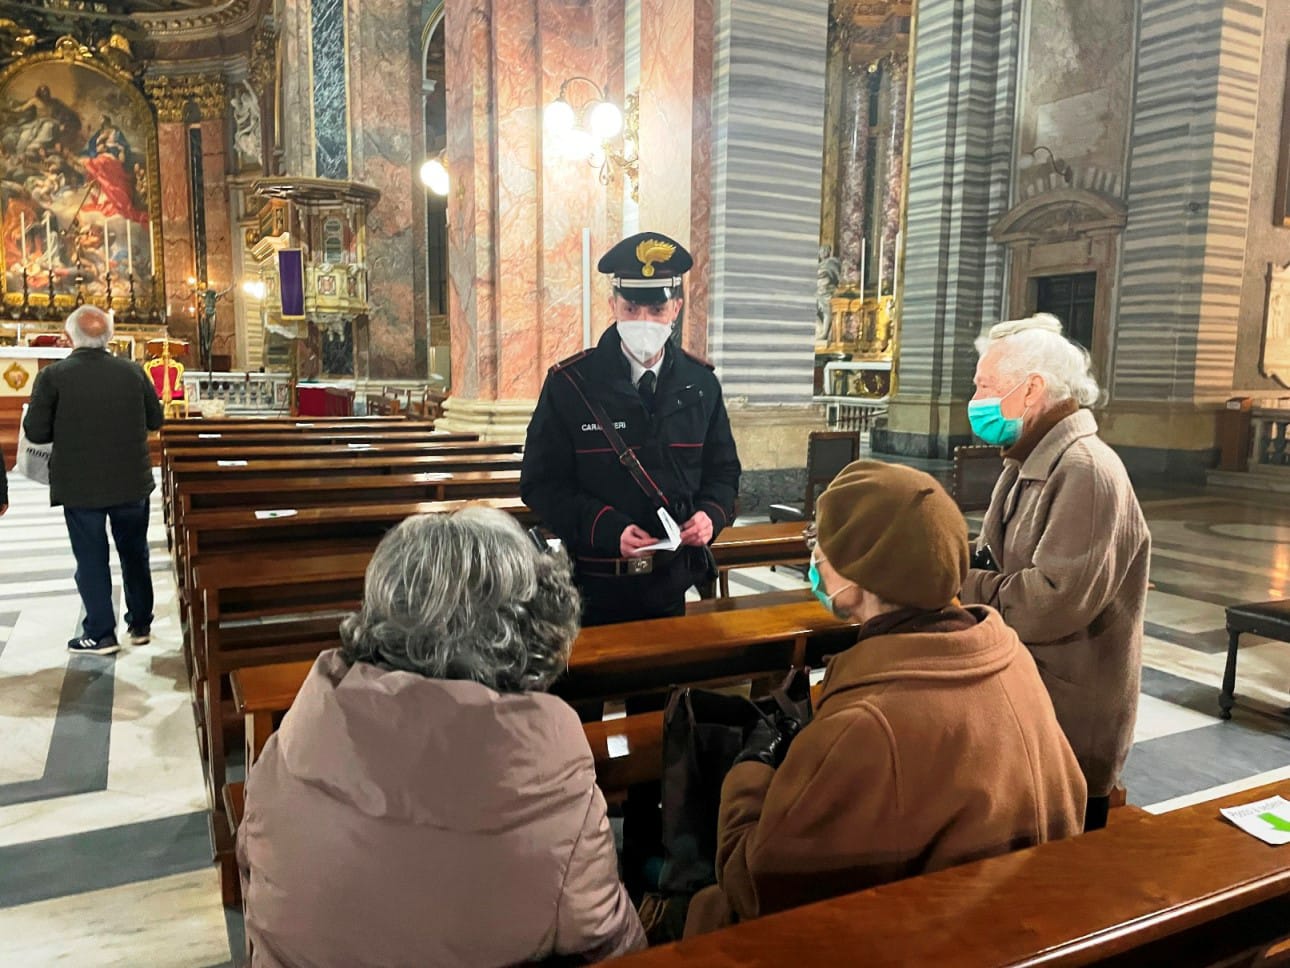 I carabinieri: "Ecco come tutelare i nostri anziani dalle truffe anche a Pasqua" (VIDEO) 1